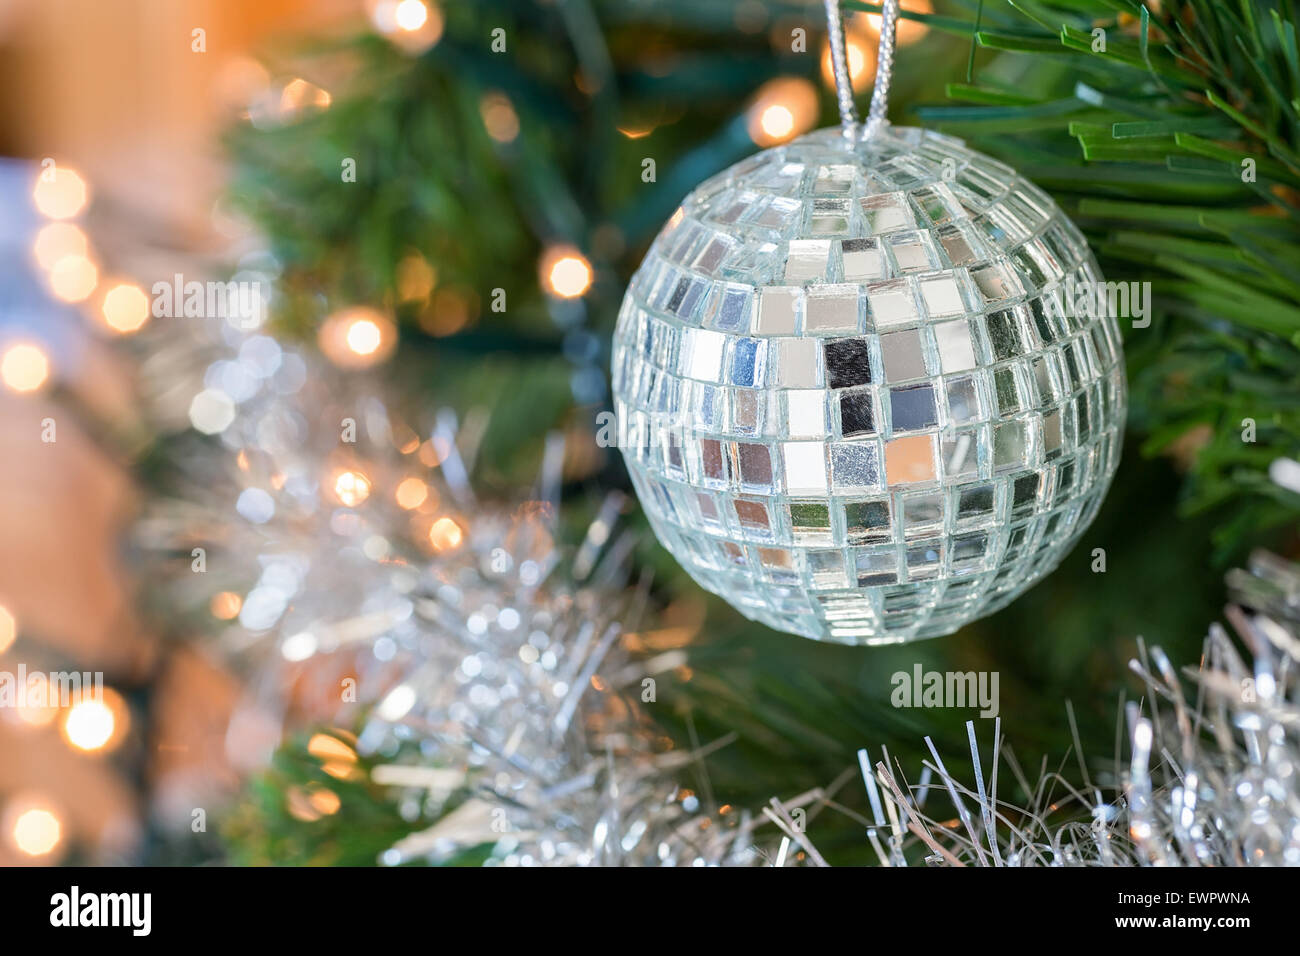 Weihnachtskugel oder Christbaumkugel mit kleinen Spiegeln als Dekoration in Baum hängen Stockfoto